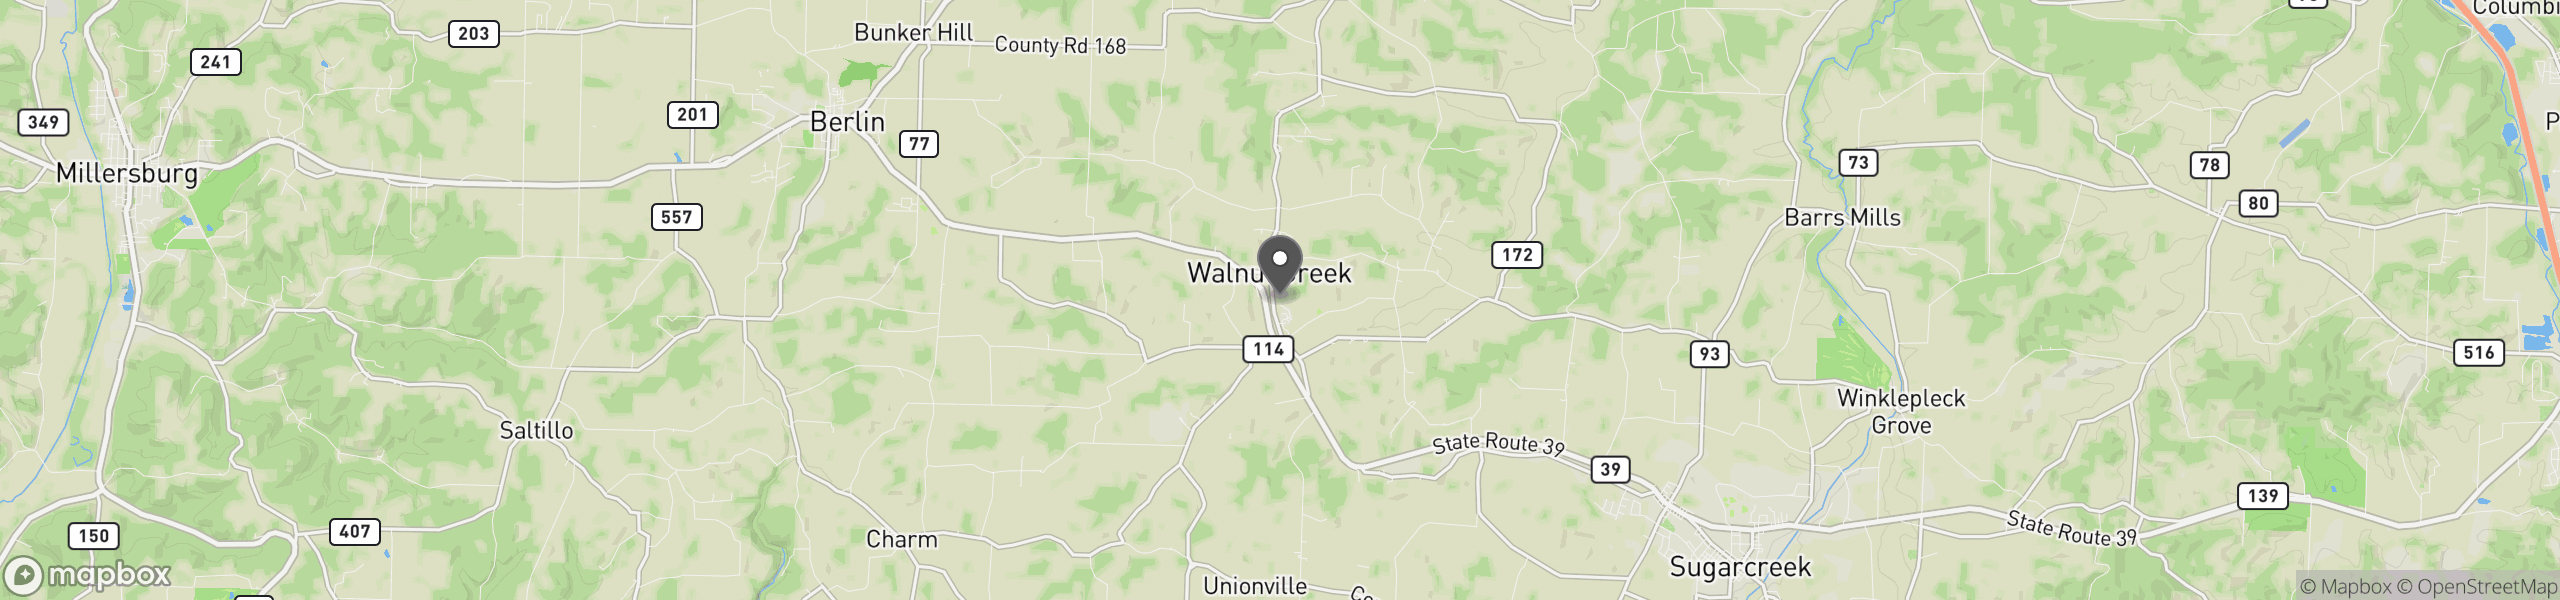 Walnut Creek, OH